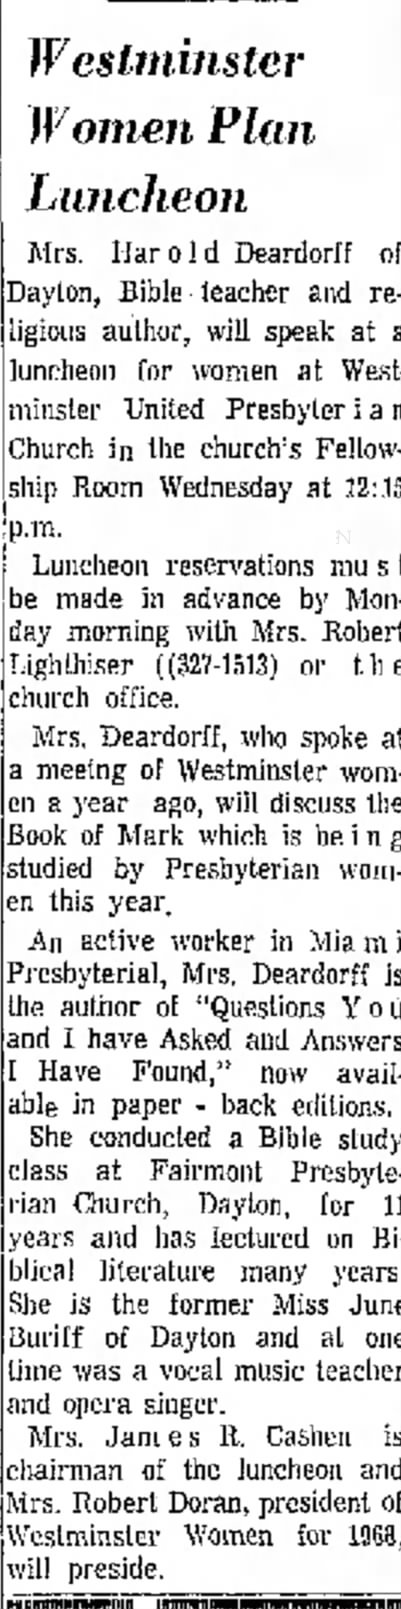 Deardorff - June Buriff Xenia Daily Gazette (Xenia, Ohio) 8 March 1968 p 2